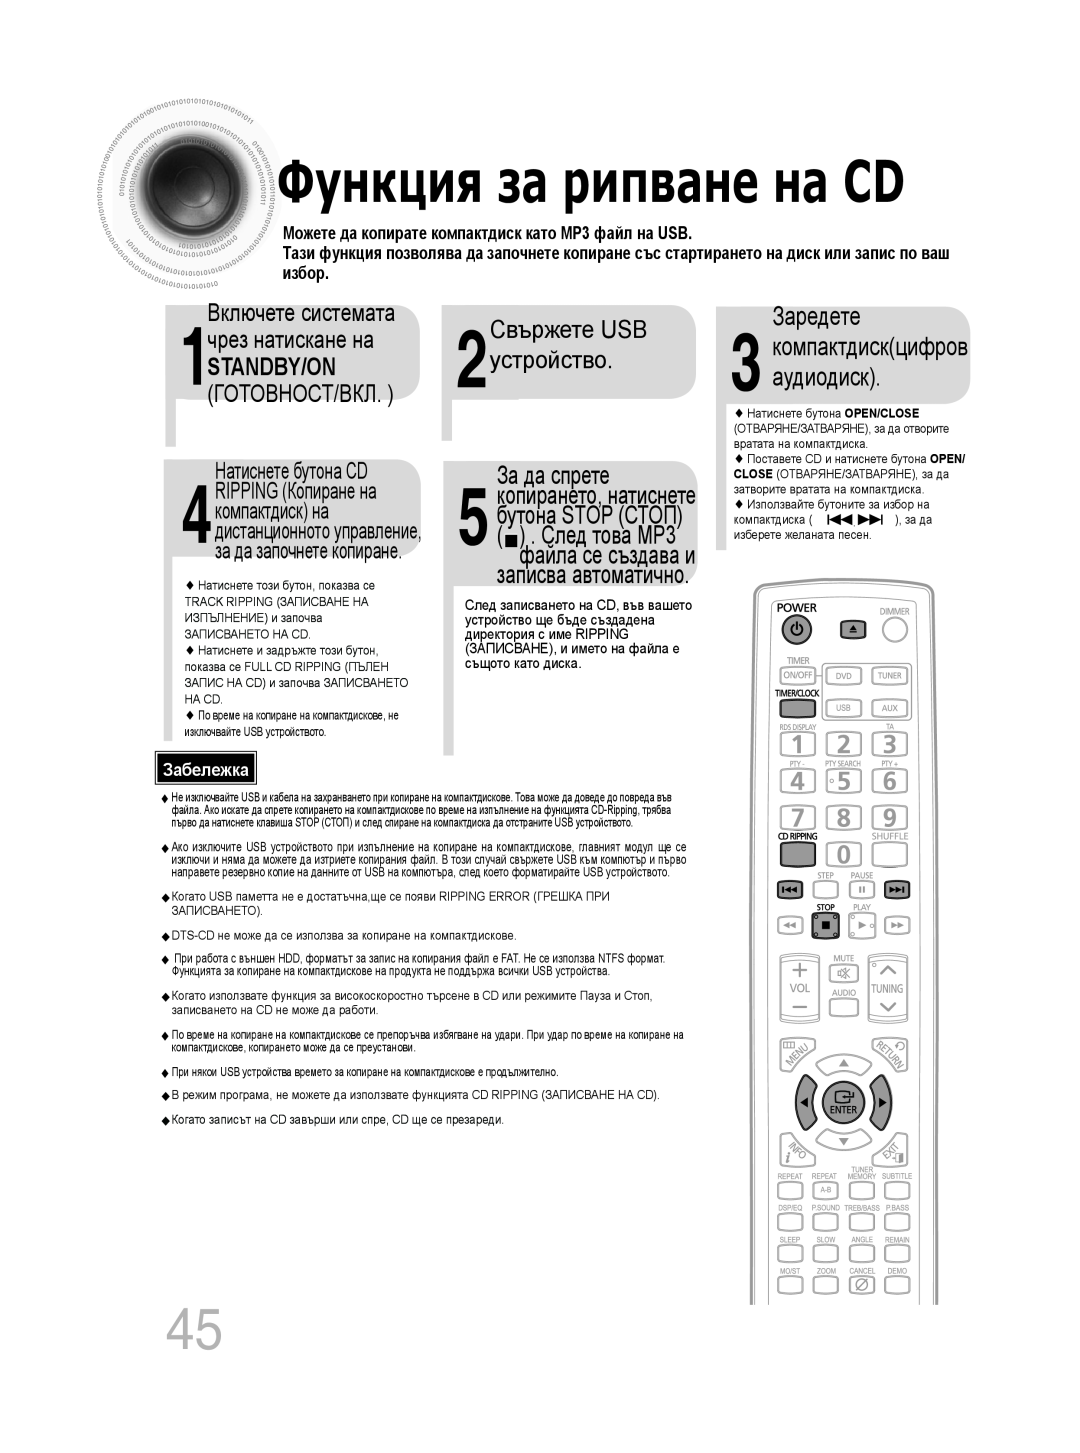 Samsung MM-C330D/EDC Свържете USB, Заредете, чрез натискане на, устройство, Standby/On, За да спрете, След това MP3, избор 